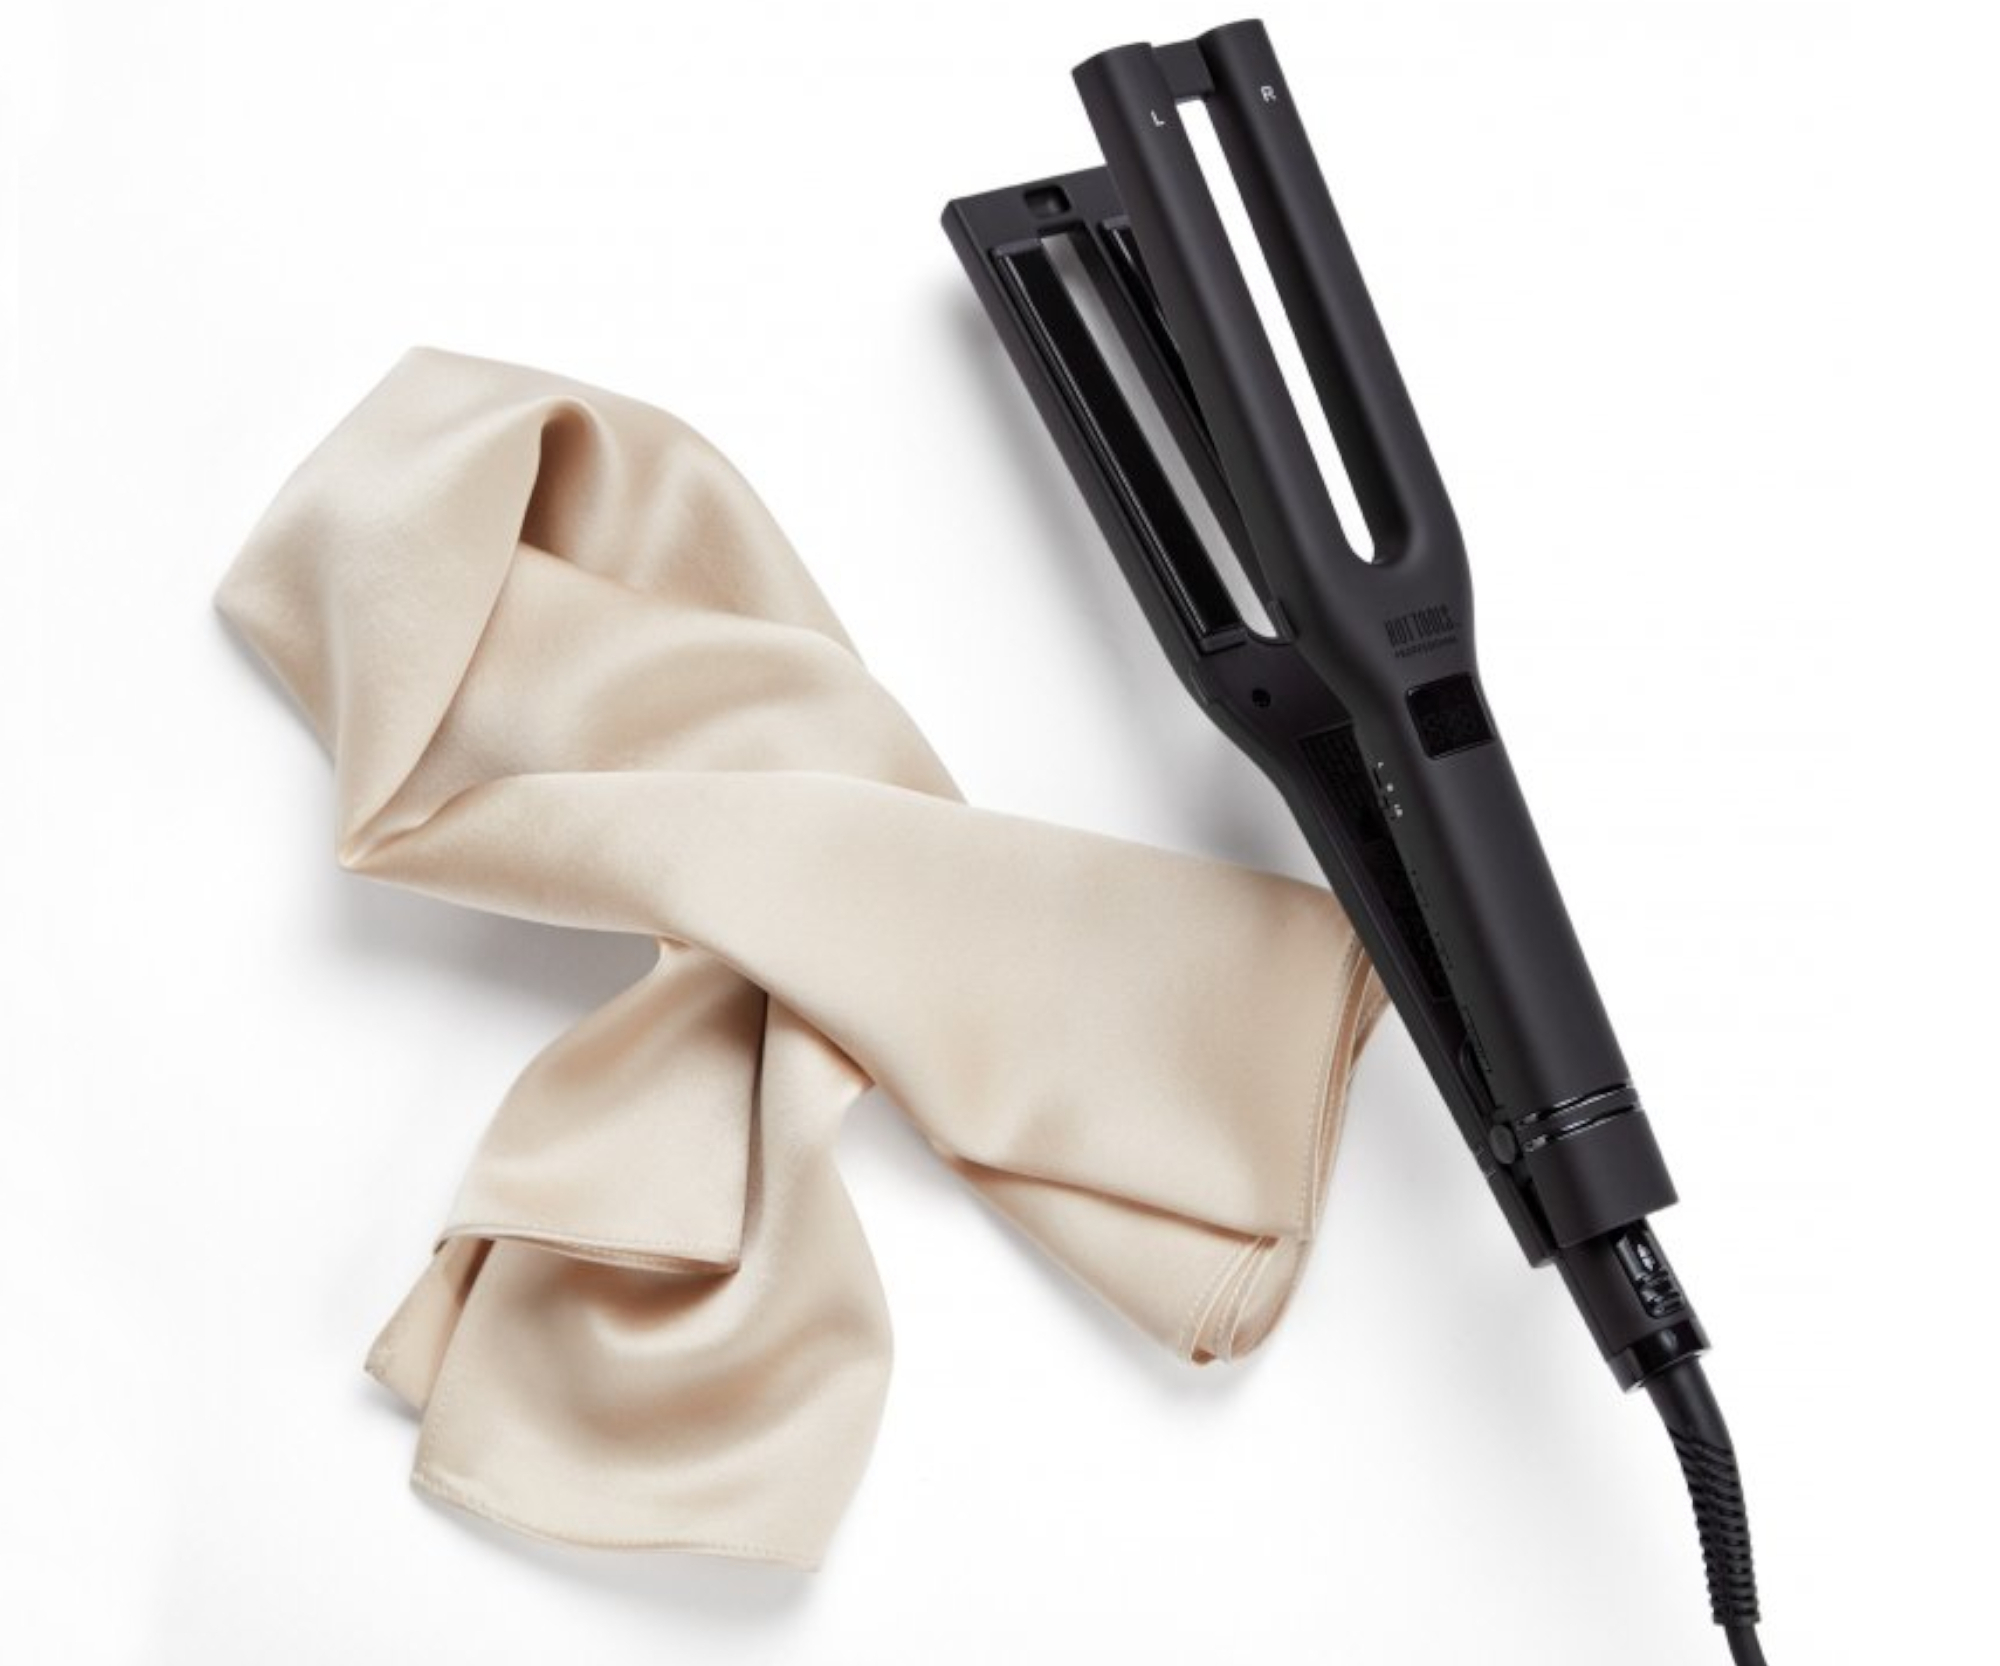 Profesionální žehlička na vlasy Hot Tools Dual Plate Salon Straightener - černá + šátek zdarma (HTST1122BGUKEGP) + DÁREK ZDARMA